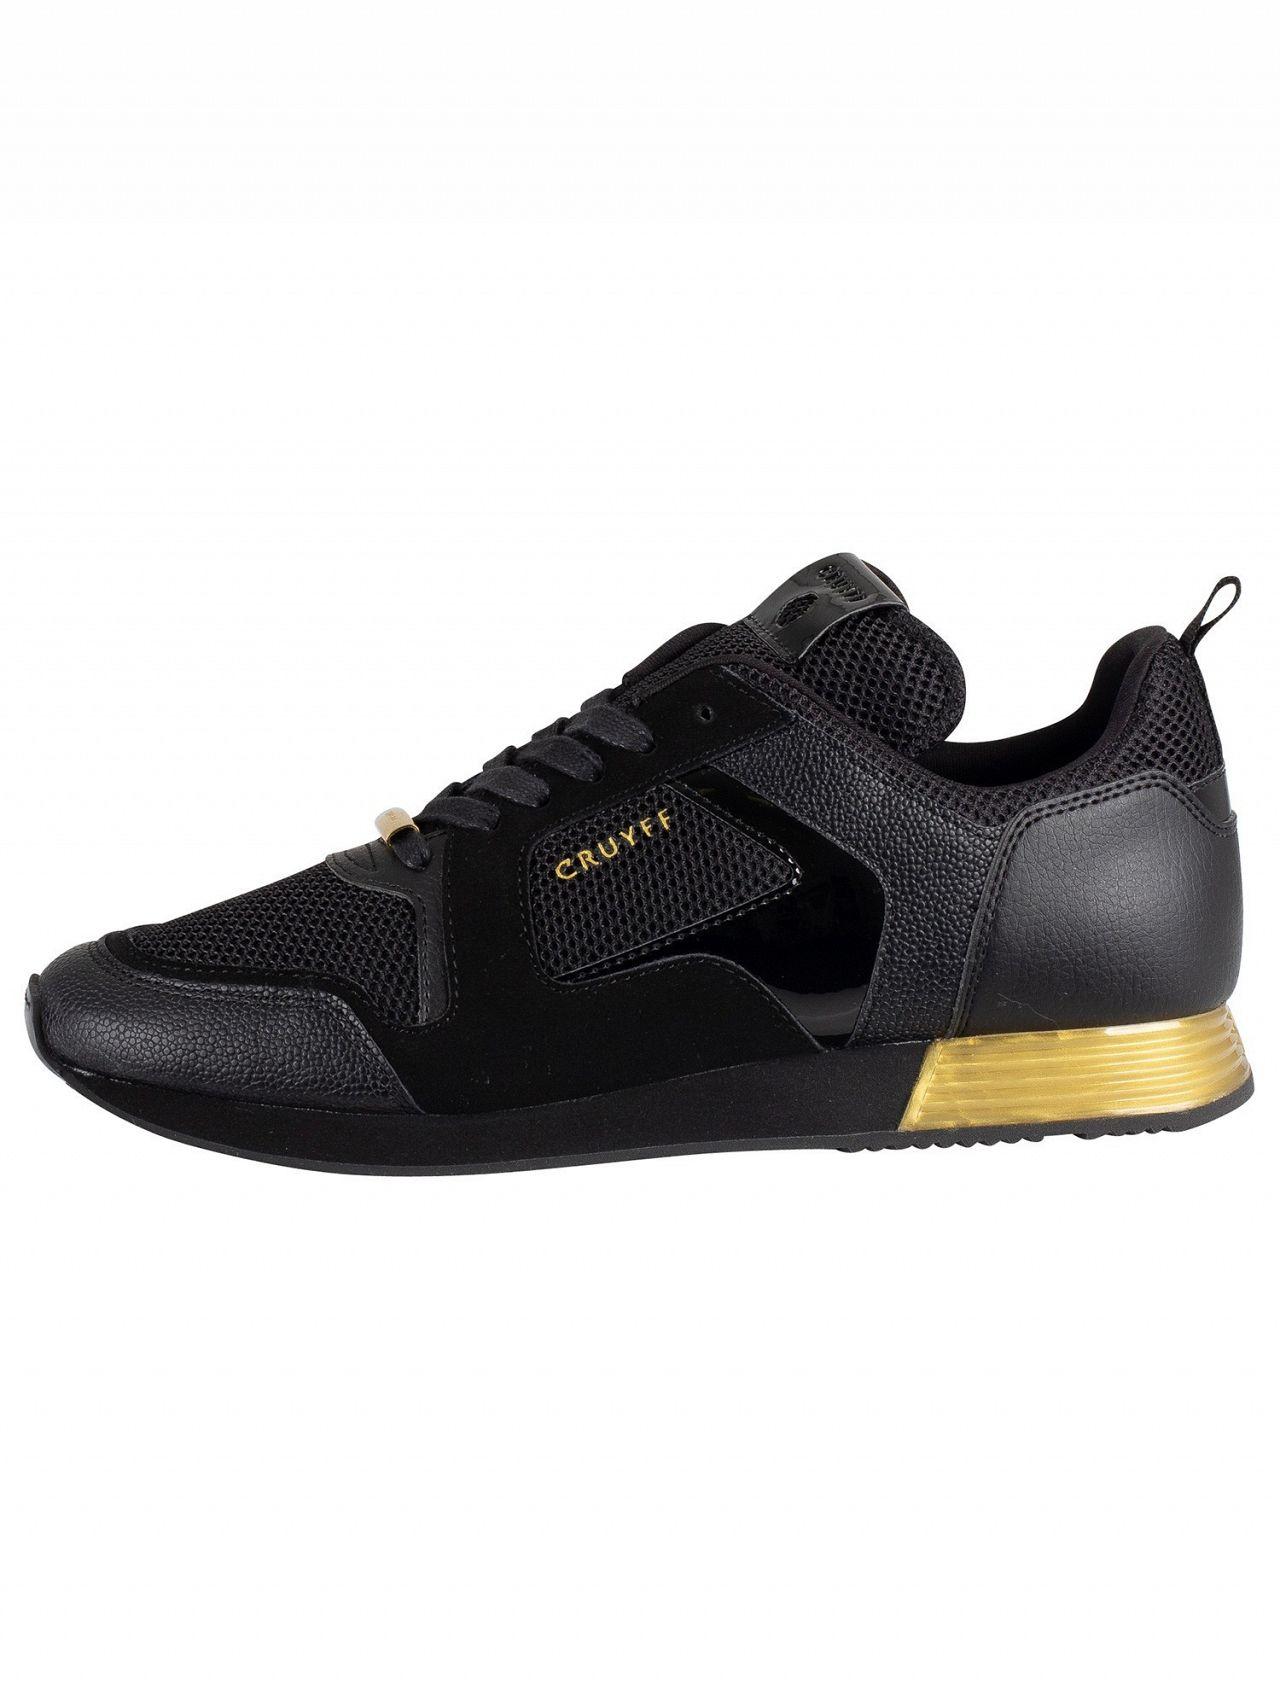 Cruyff Lusso CC6830201492 Schnürer Herren Turnschuhe Schwarz Gold Sneakers